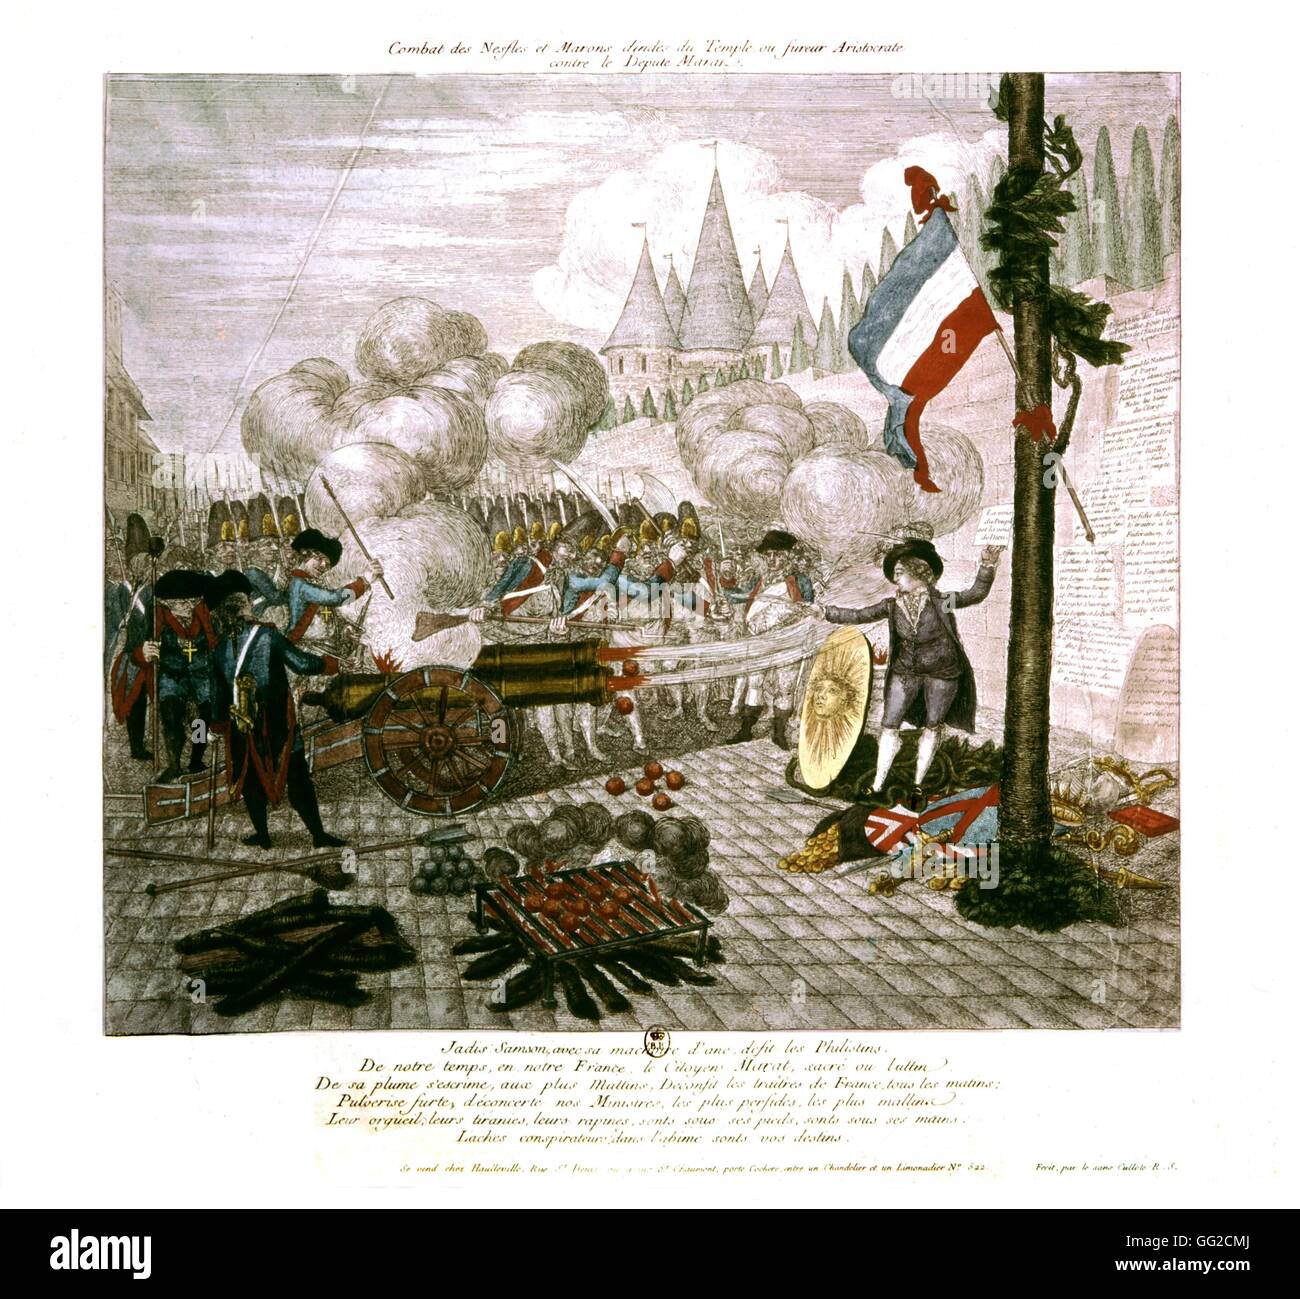 Männer kämpfen mit Medears und Rosskastanien oder zukünftige Aristokrat gegen den stellvertretenden Marat 1792 Frankreich, französische Revolution von 1789 Stockfoto